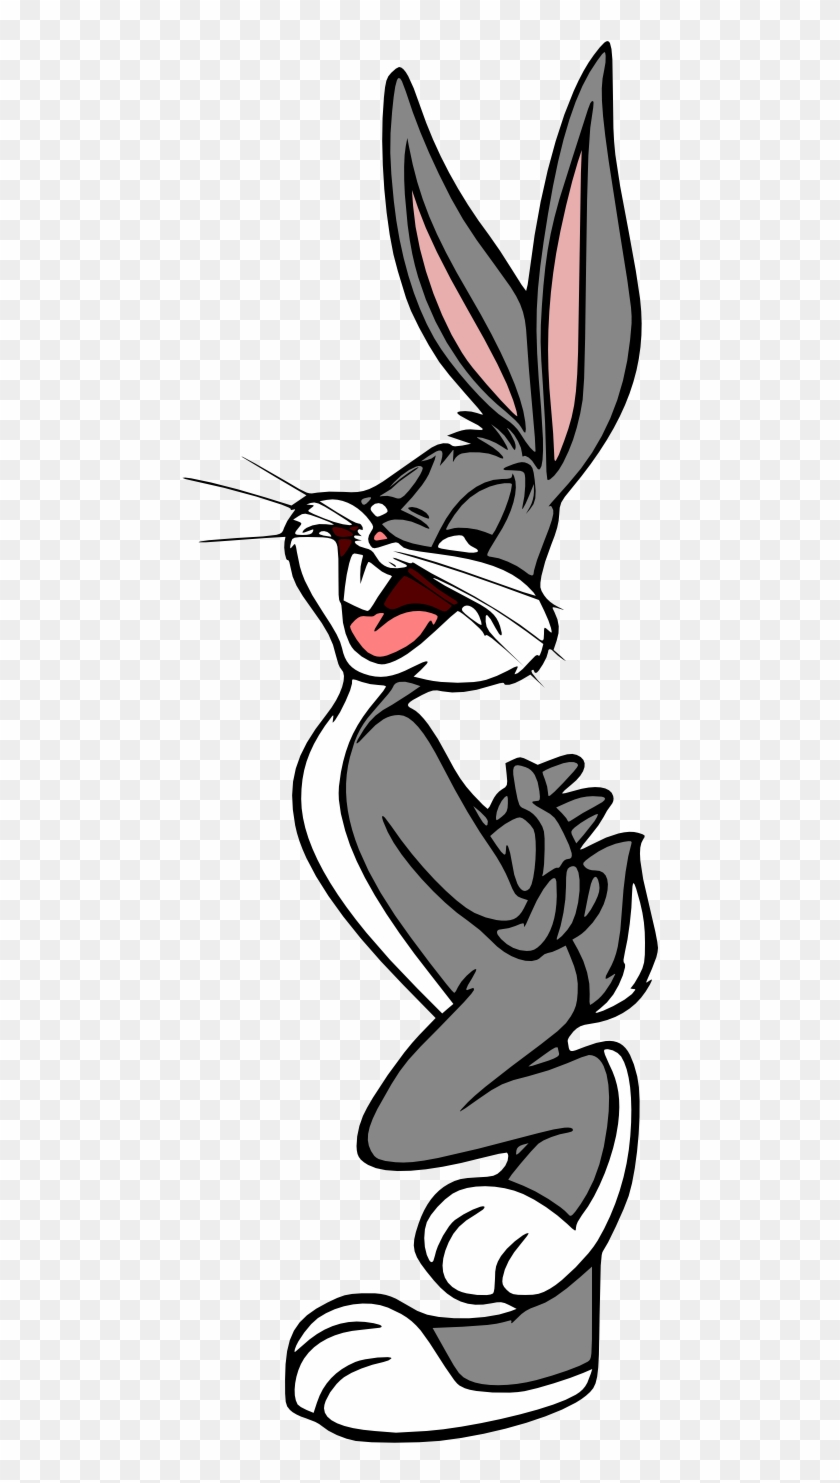 Bugs Bunny Lola Bunny Tweety Babs Bunny Buster Bunny - Bugs Bunny Lola Bunny Tweety Babs Bunny Buster Bunny #621507